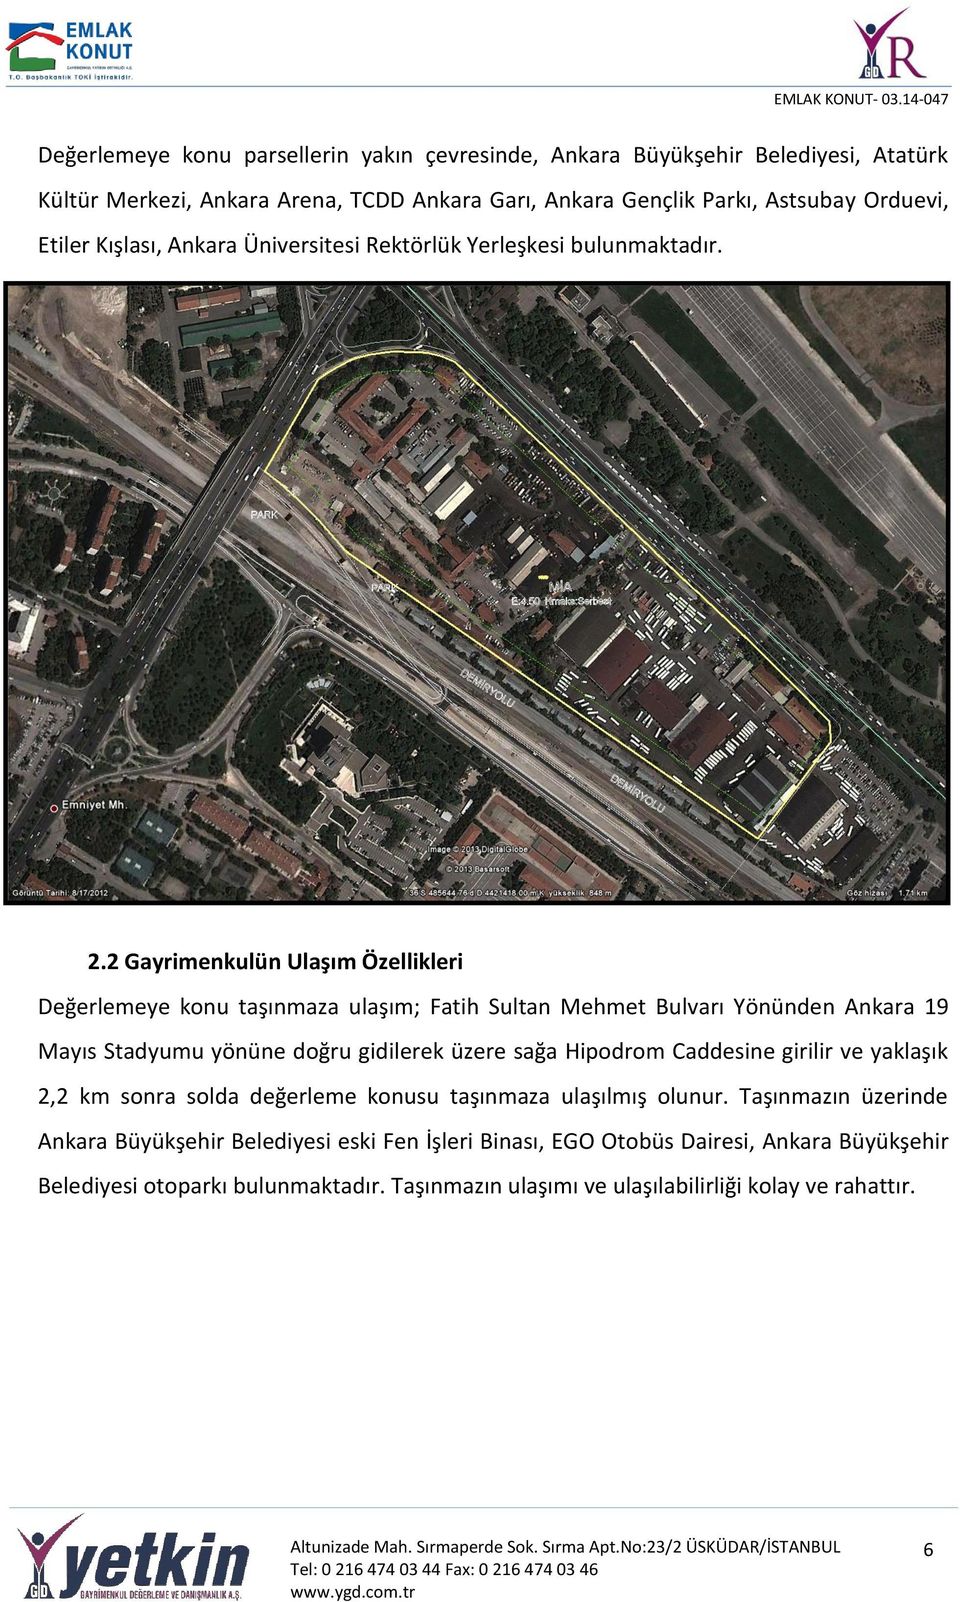 2 Gayrimenkulün Ulaşım Özellikleri Değerlemeye konu taşınmaza ulaşım; Fatih Sultan Mehmet Bulvarı Yönünden Ankara 19 Mayıs Stadyumu yönüne doğru gidilerek üzere sağa Hipodrom